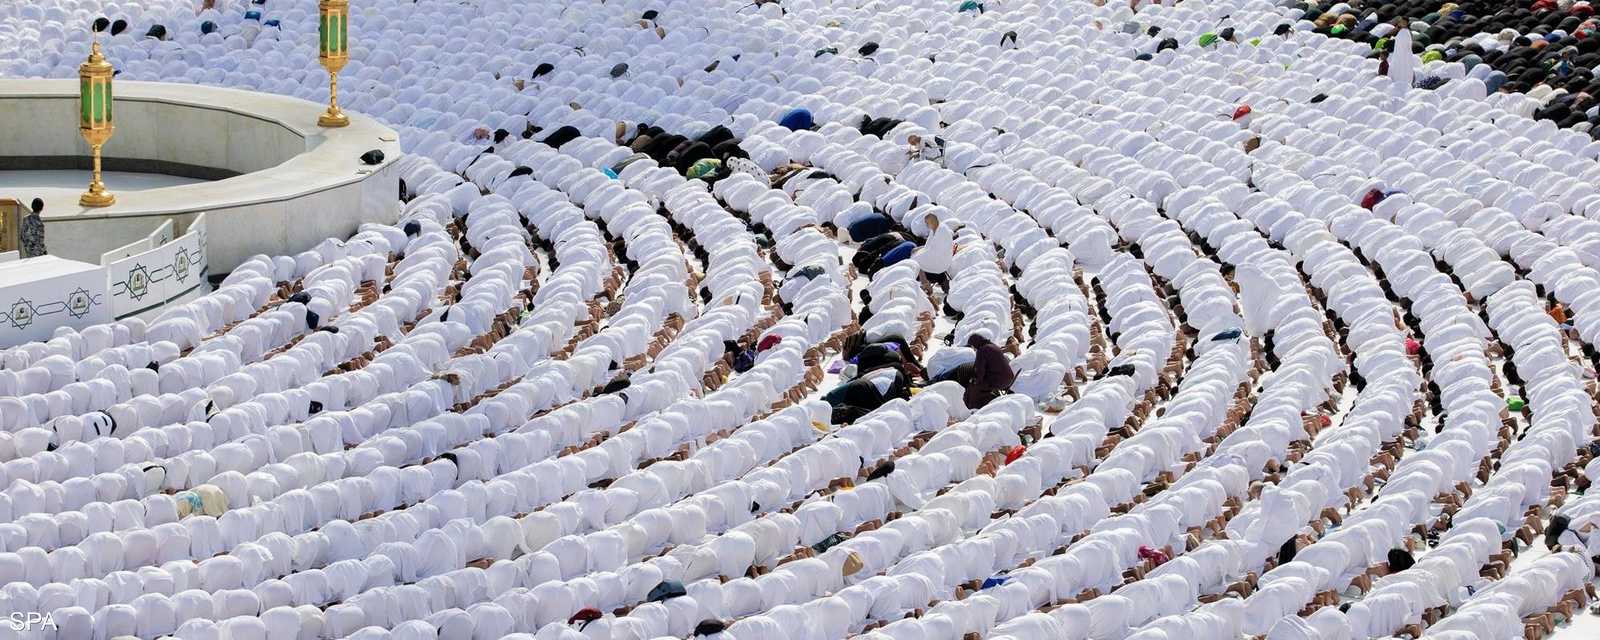 شهد المسجد الحرام في مكة المكرمة، خلال اليوم الـ27 من شهر رمضان، توافد أعداد كبيرة من المعتمرين والمصلين.